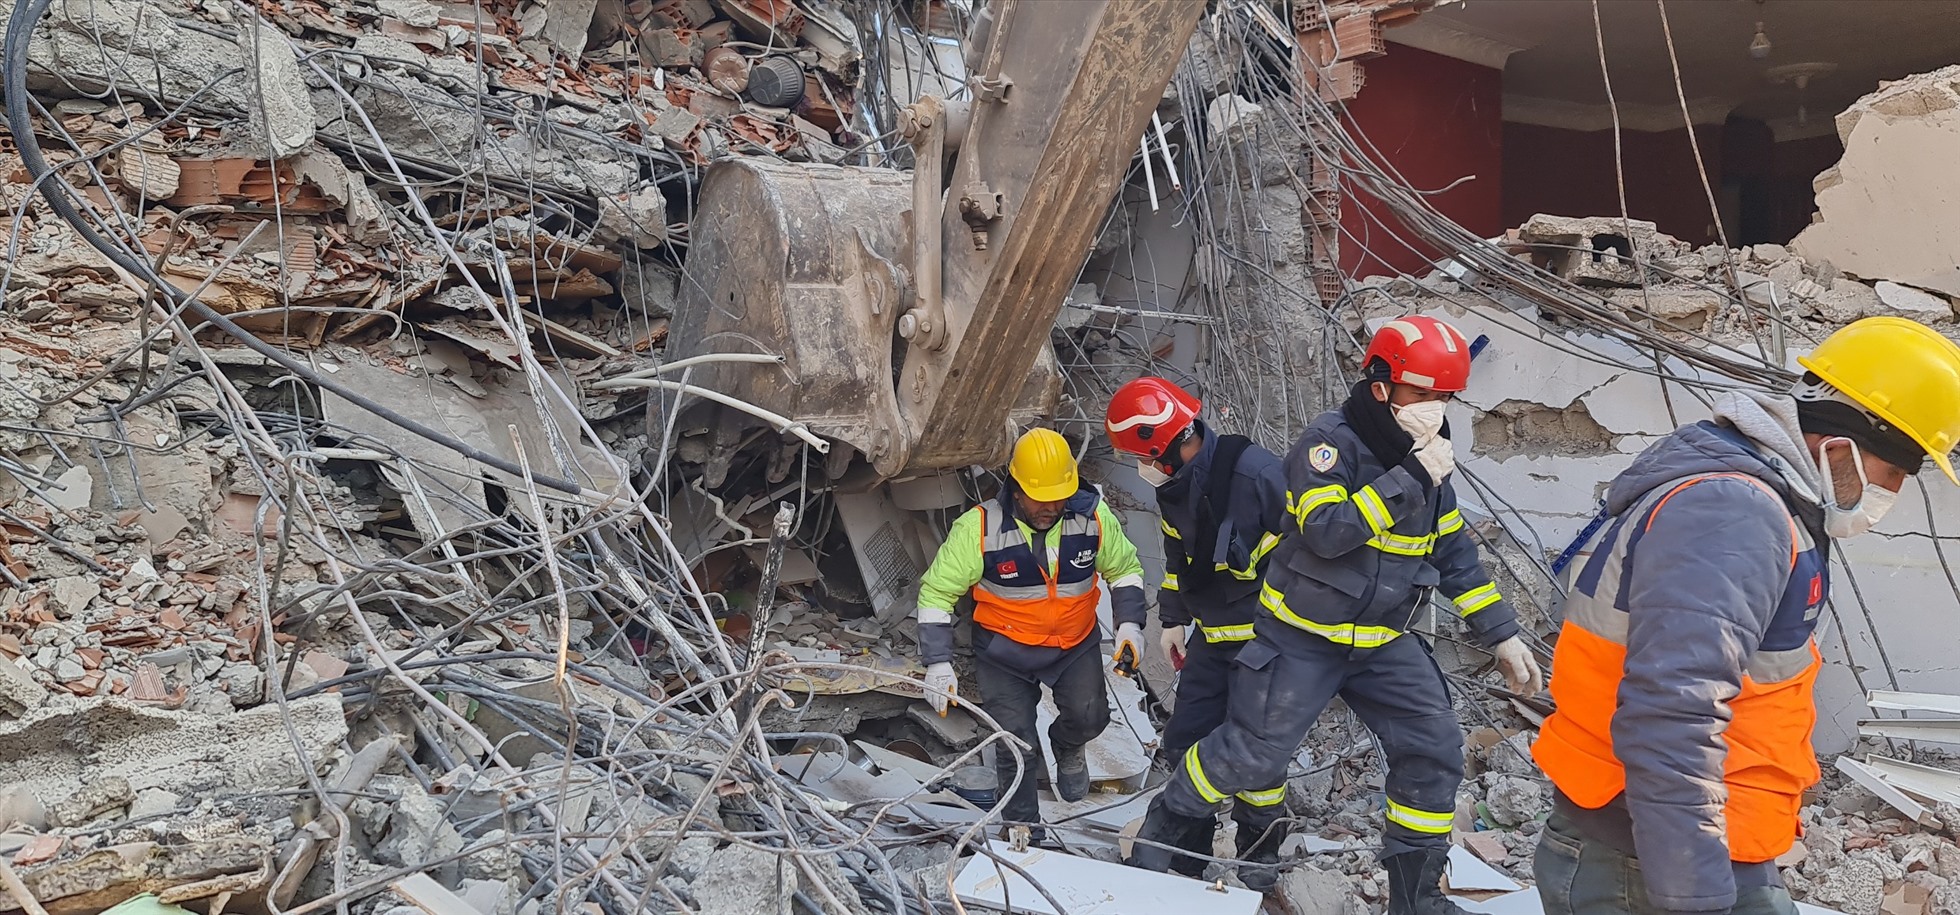 Đống đổ nát tại hiện trường được cho là có 15 nạn nhân bị chôn vùi sau trận động đất hôm 6.2. Ảnh: Cục Cảnh sát PCCC&CNCH